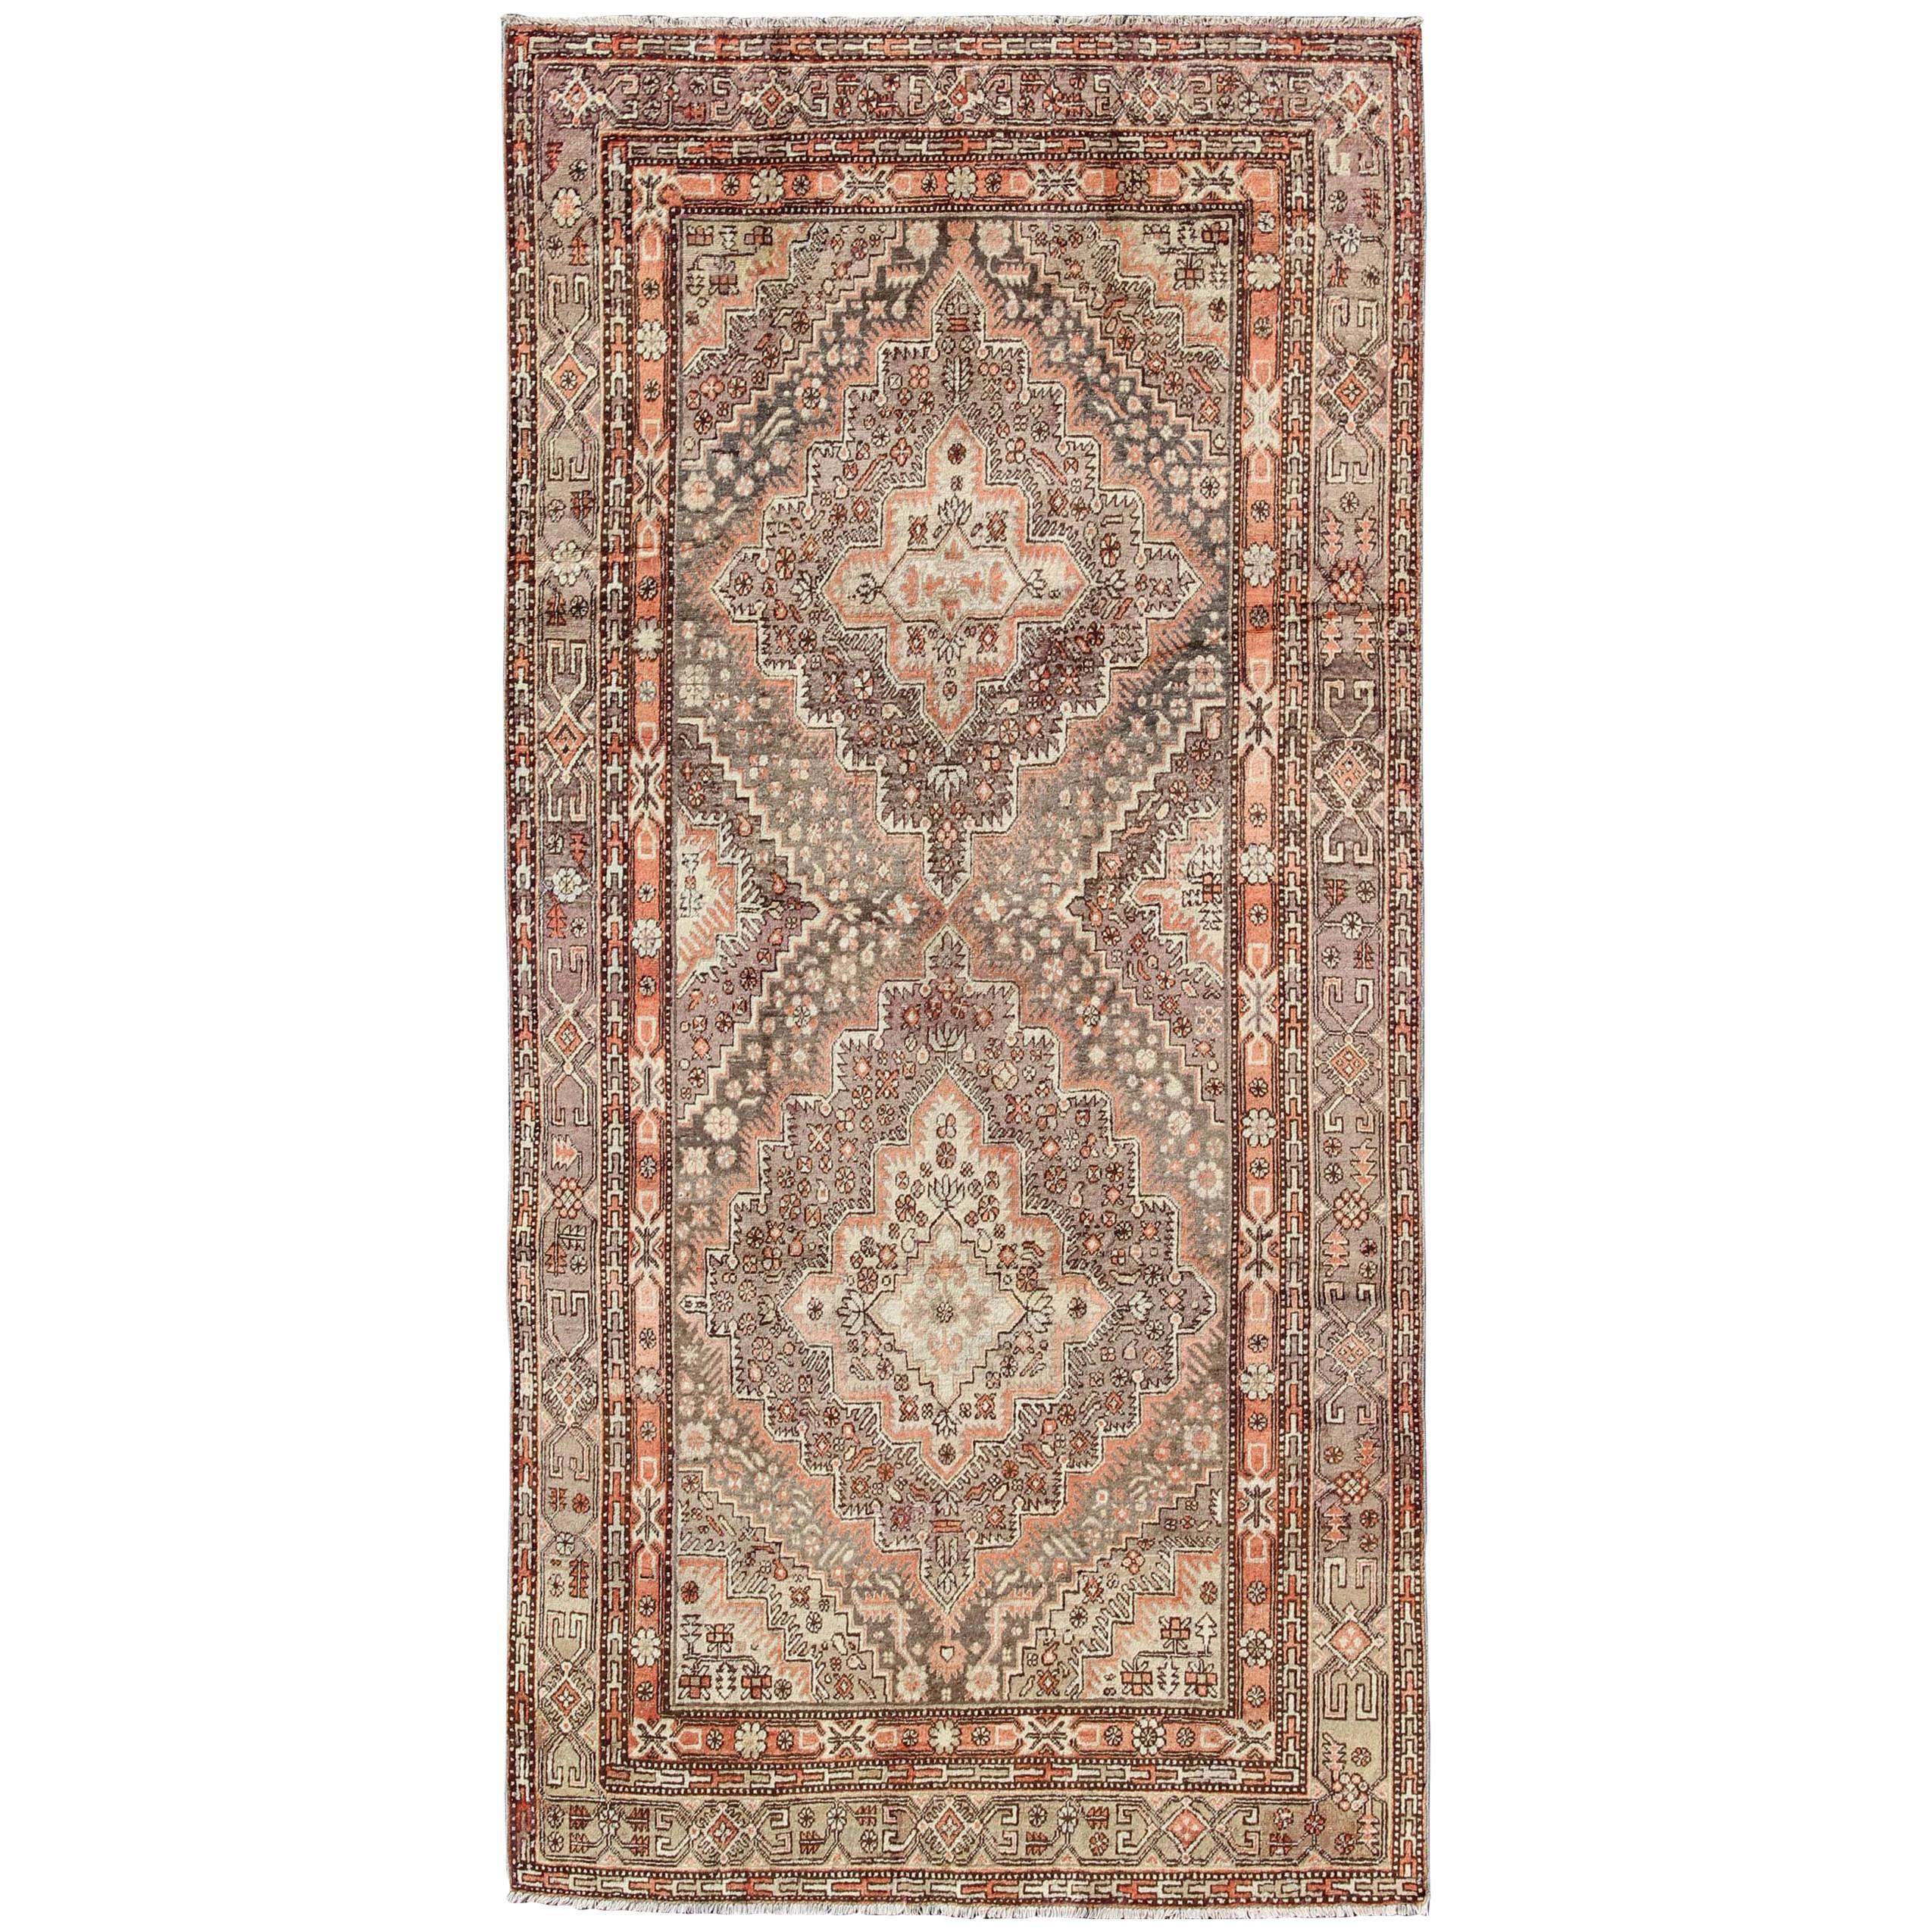 Antiker Khotan-Teppich aus dem frühen 20. Jahrhundert mit gepaarten Medaillons in Grau und Rot